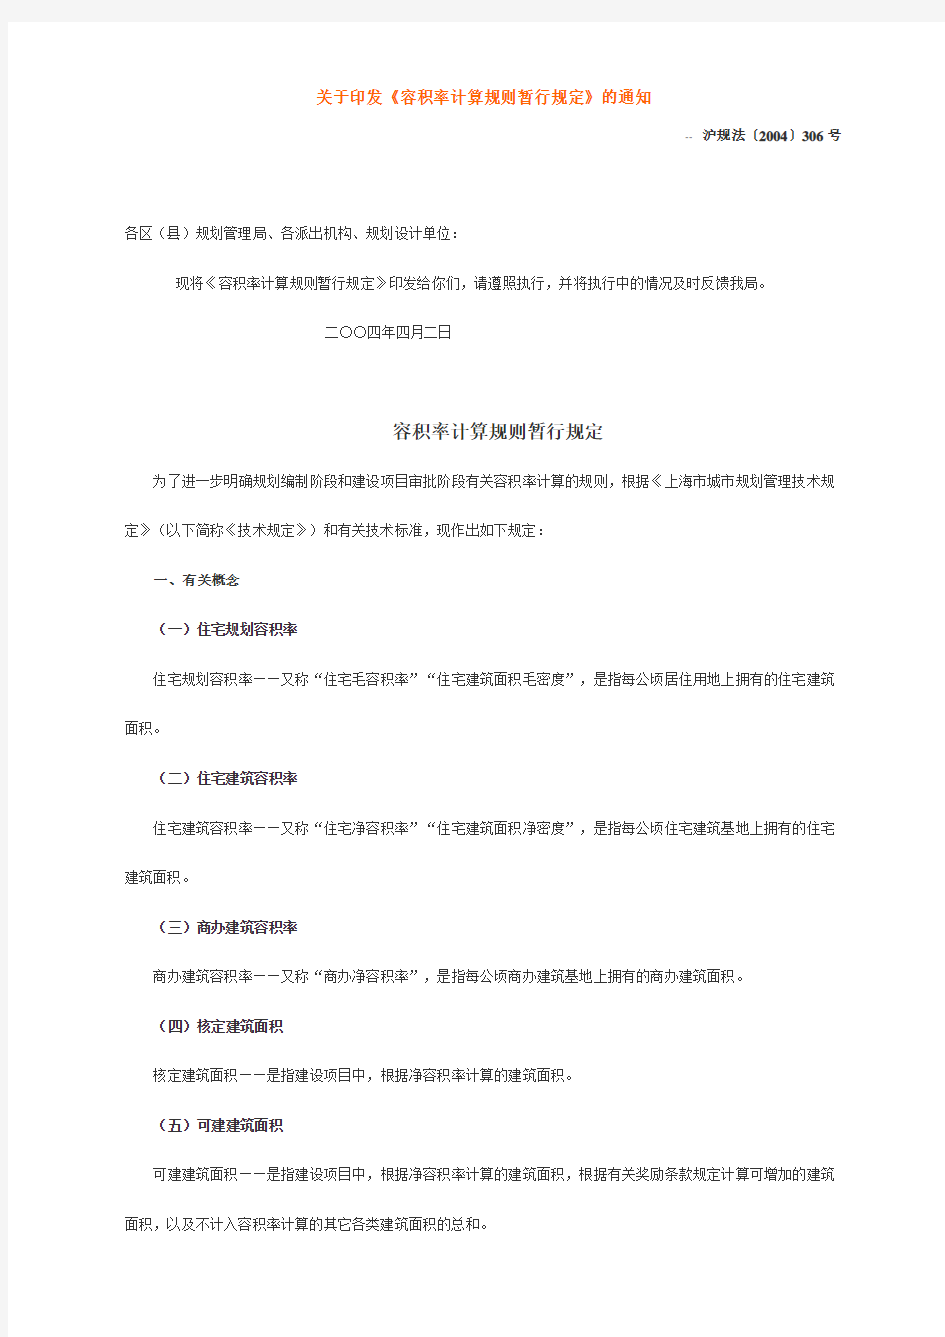 上海市容积率计算规则暂行规定